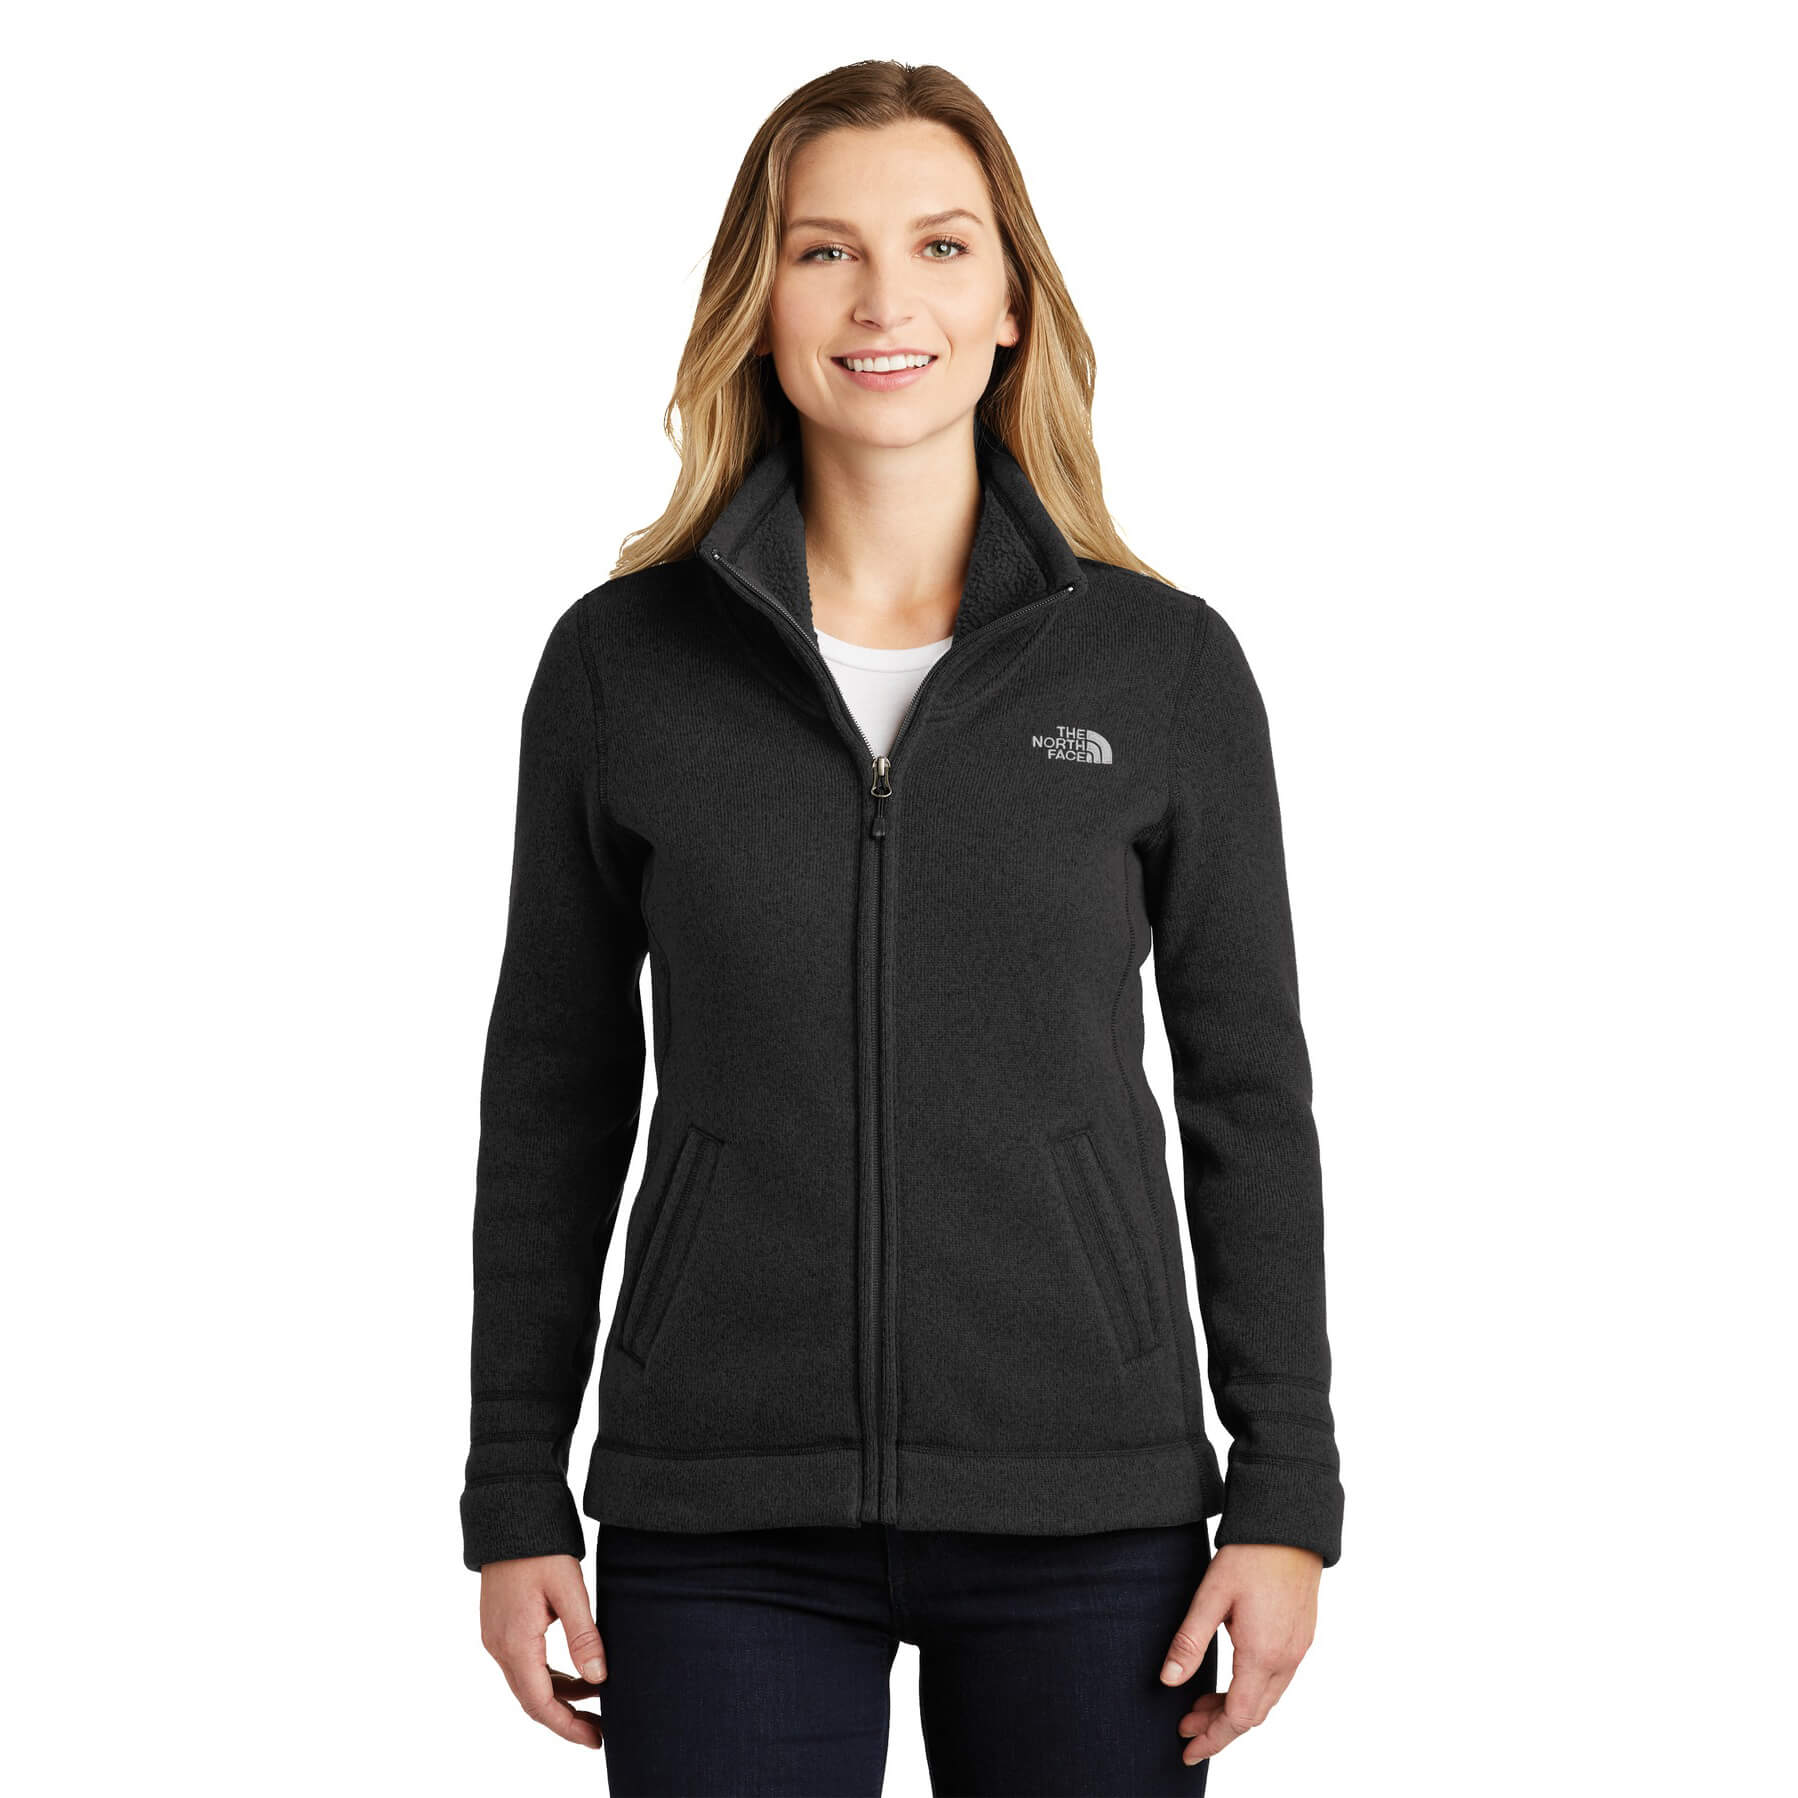 Vallen Rijden Raadplegen The North Face ® Ladies Sweater Fleece Jacket - Phelps USA